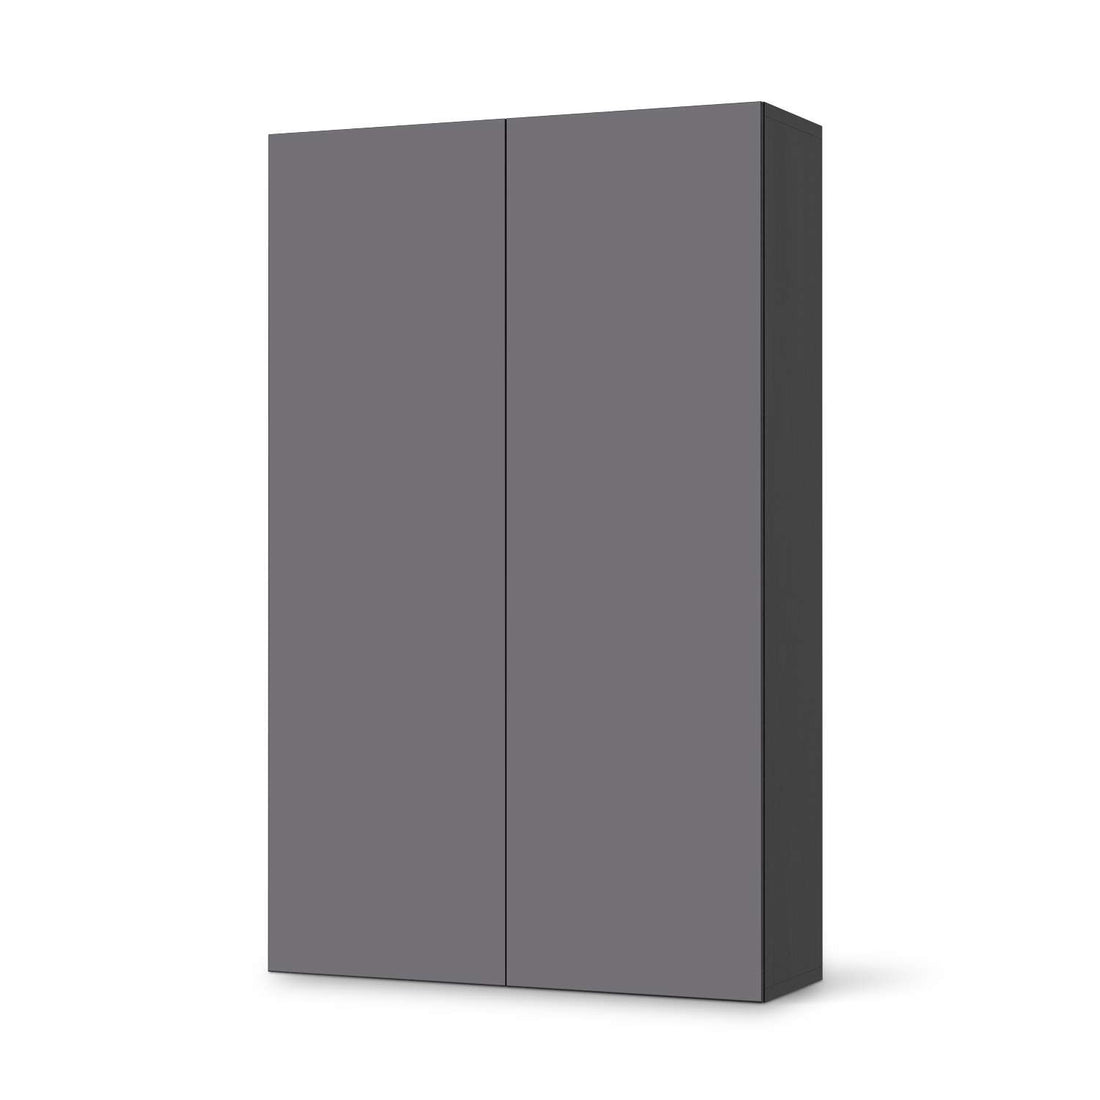 Klebefolie für Möbel Grau Light - IKEA Besta Schrank Hoch 2 Türen - schwarz